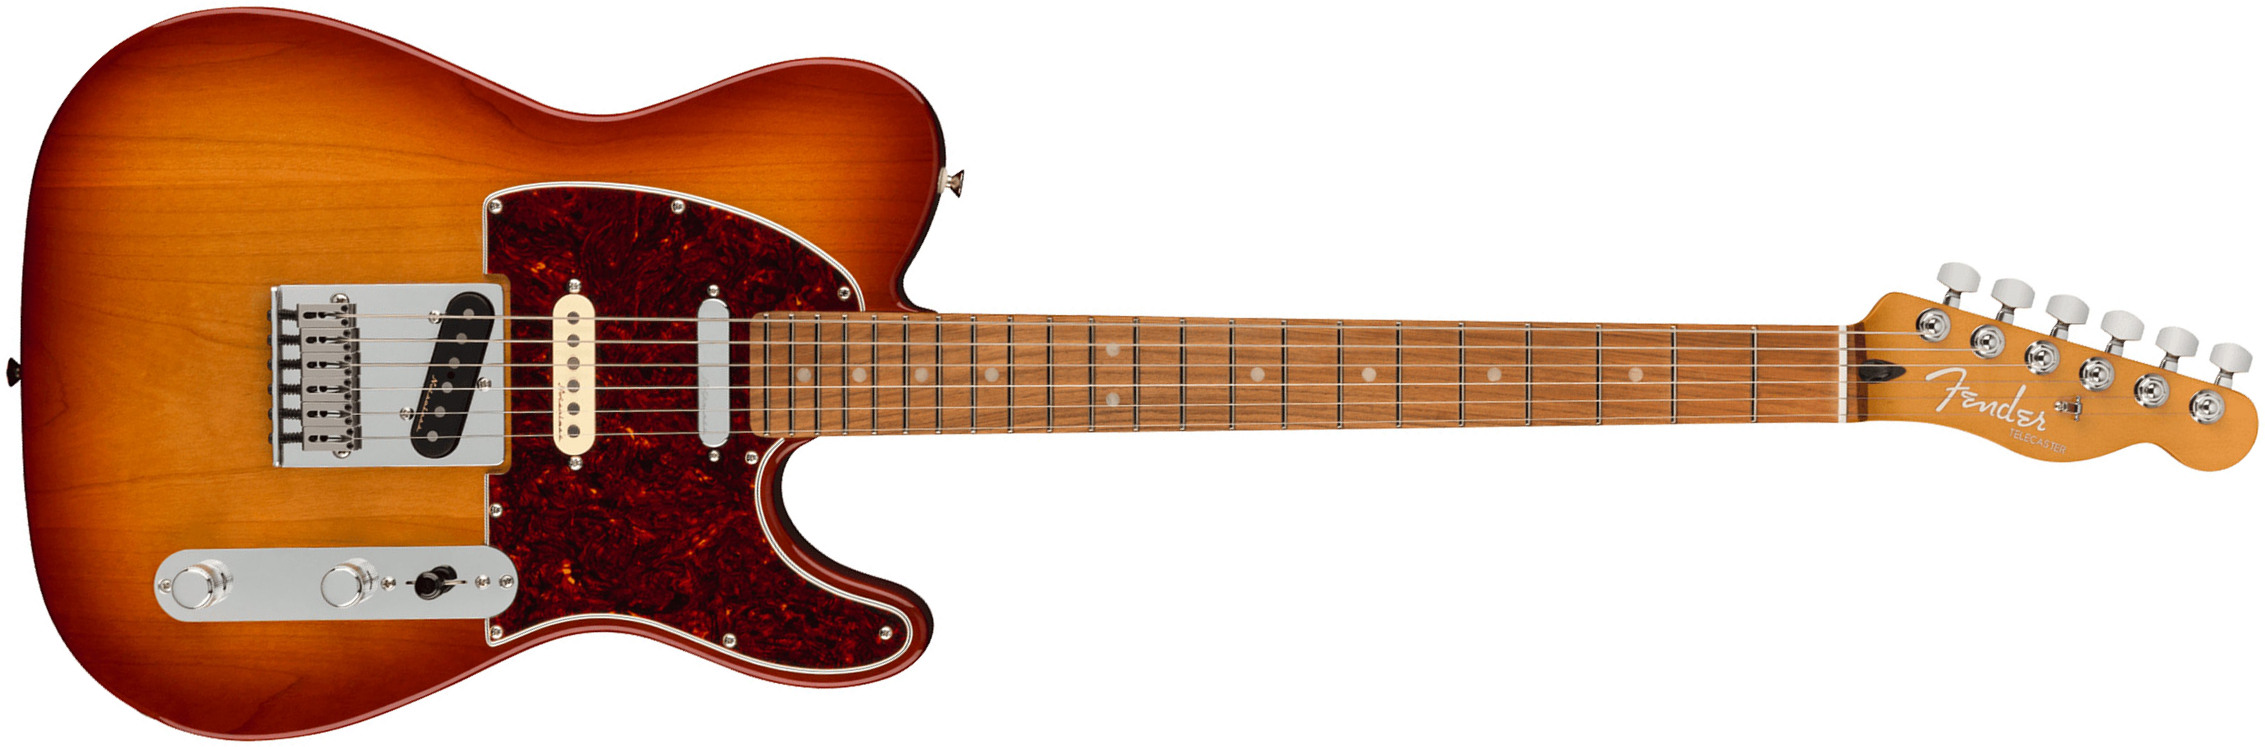 Fender Tele Player Plus Nashville Mex 2023 2s Ht Pf - Sienna Sunburst - Televorm elektrische gitaar - Main picture